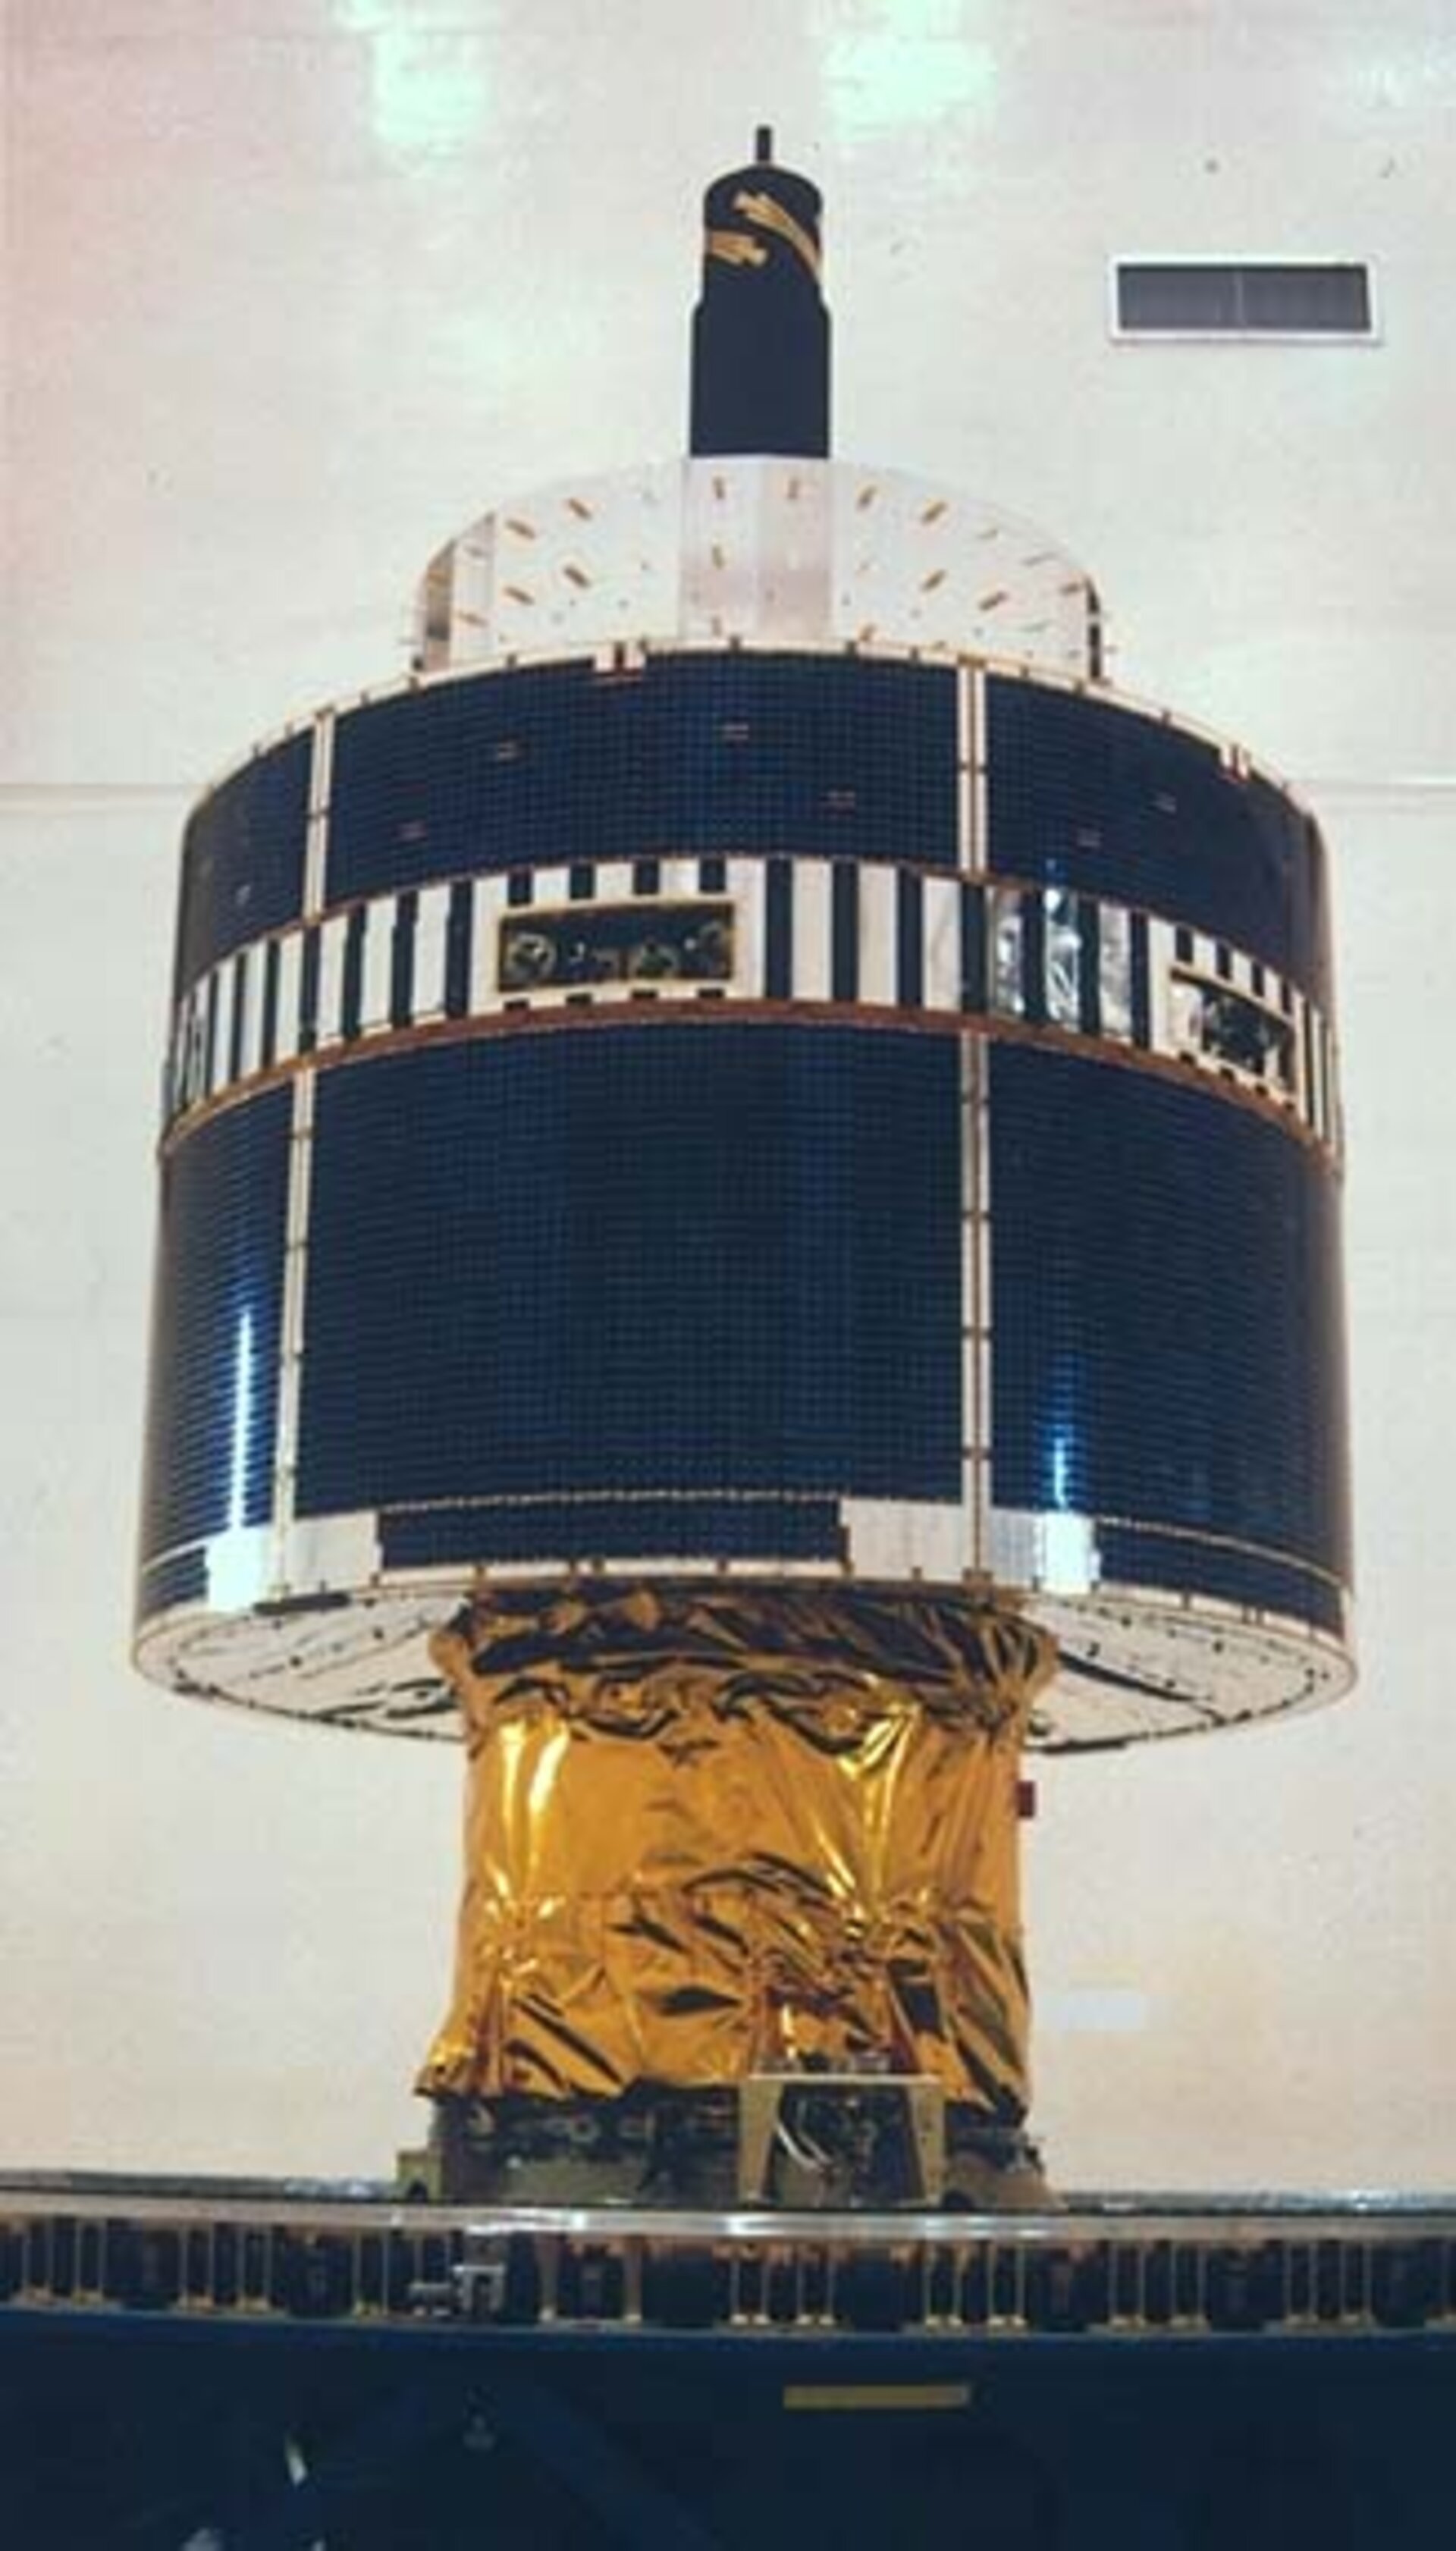 Meteosat-7 launch preparations